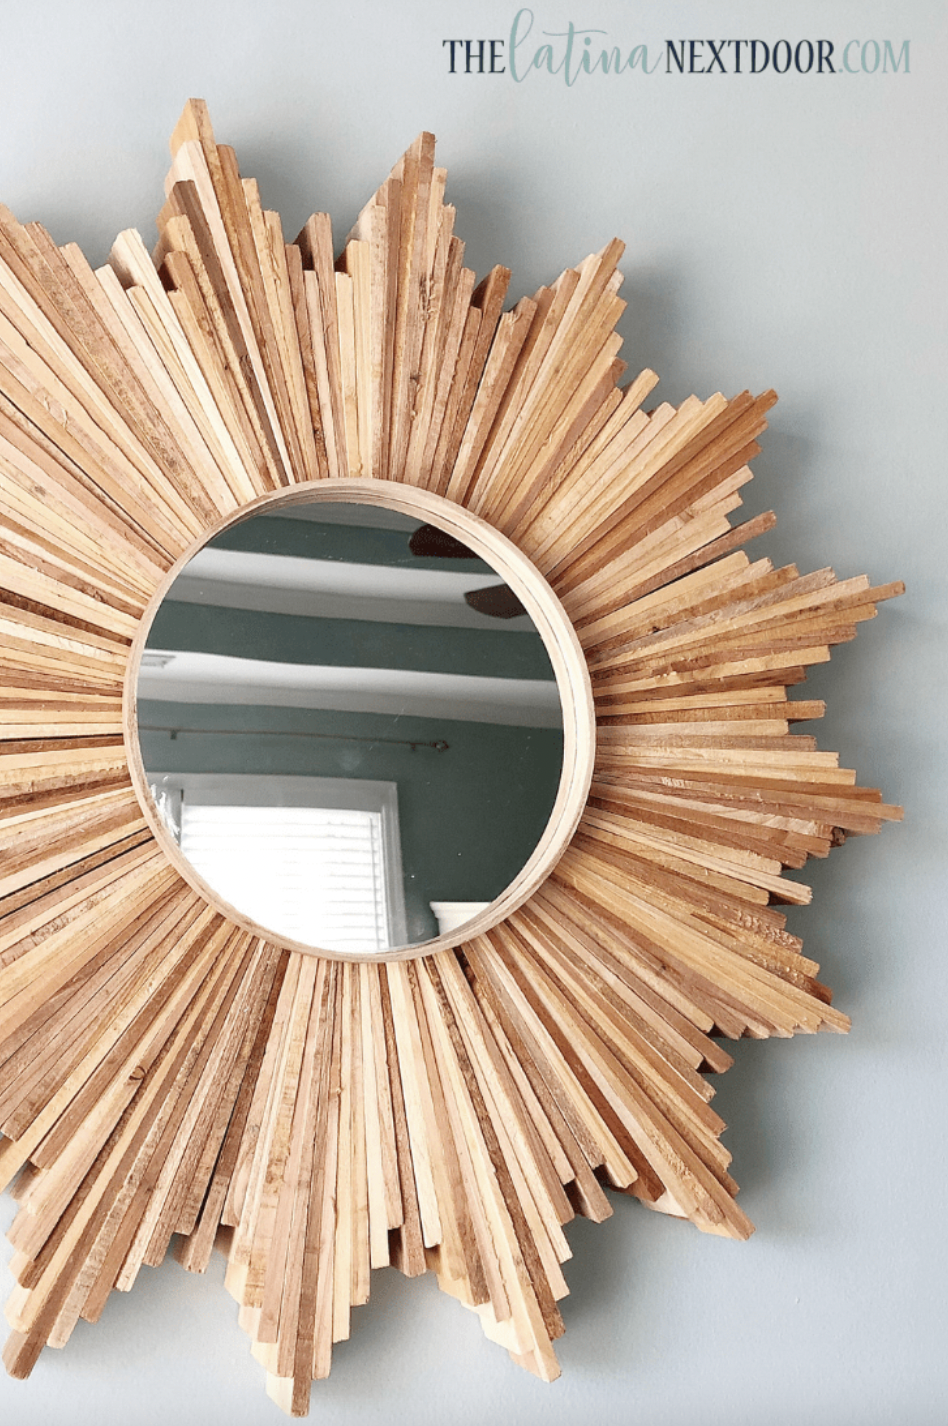 6. Rustic Sunburst Mirror DIY